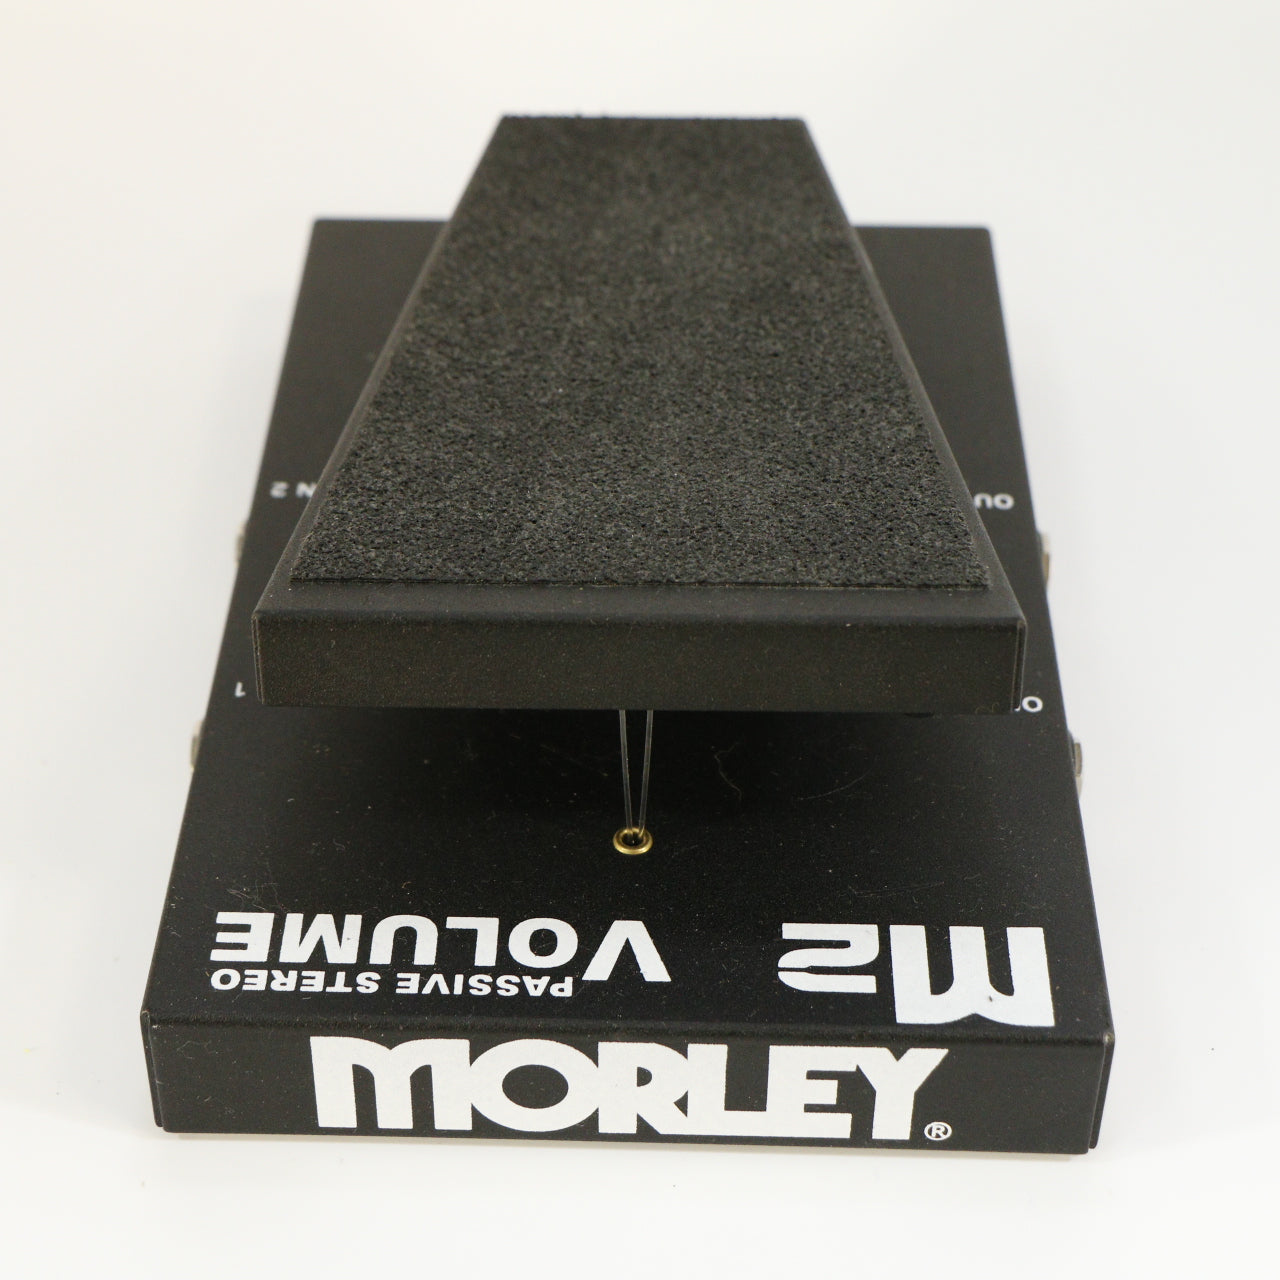 Morley M2 Passive Stereo Volume